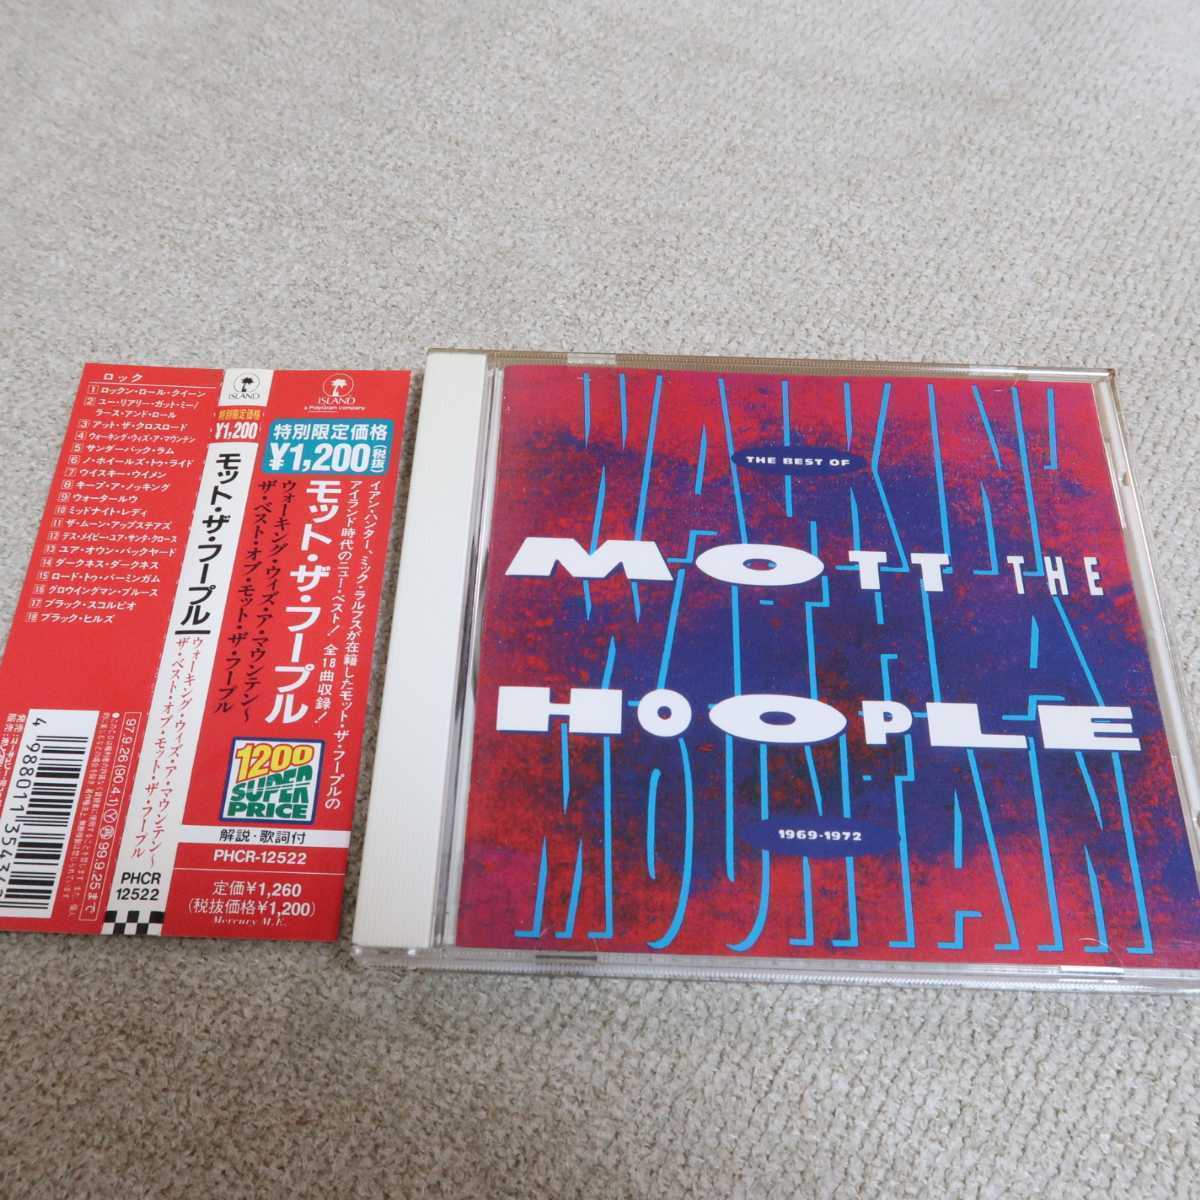 ベスト・オブ・モット・ザ・フープル　日本版　Mott the Hoople　送料無料